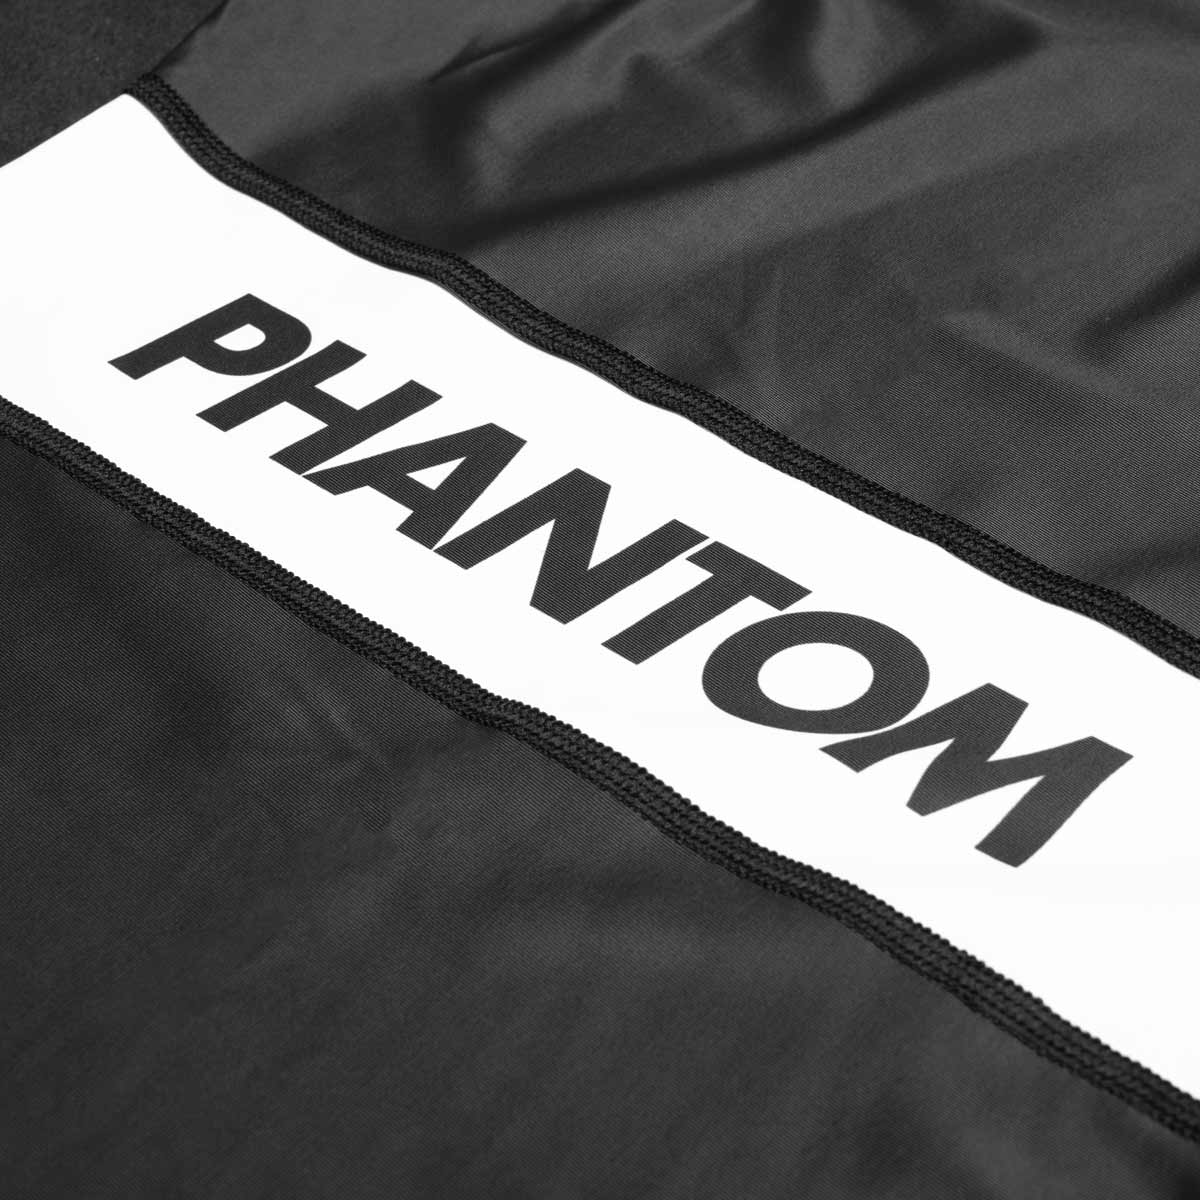 Phantom Ringertrikot Apex in der Farbe Schwarz. Ideal für dein Ringer Training. In hervorragender Passform und Haltbarkeit. 